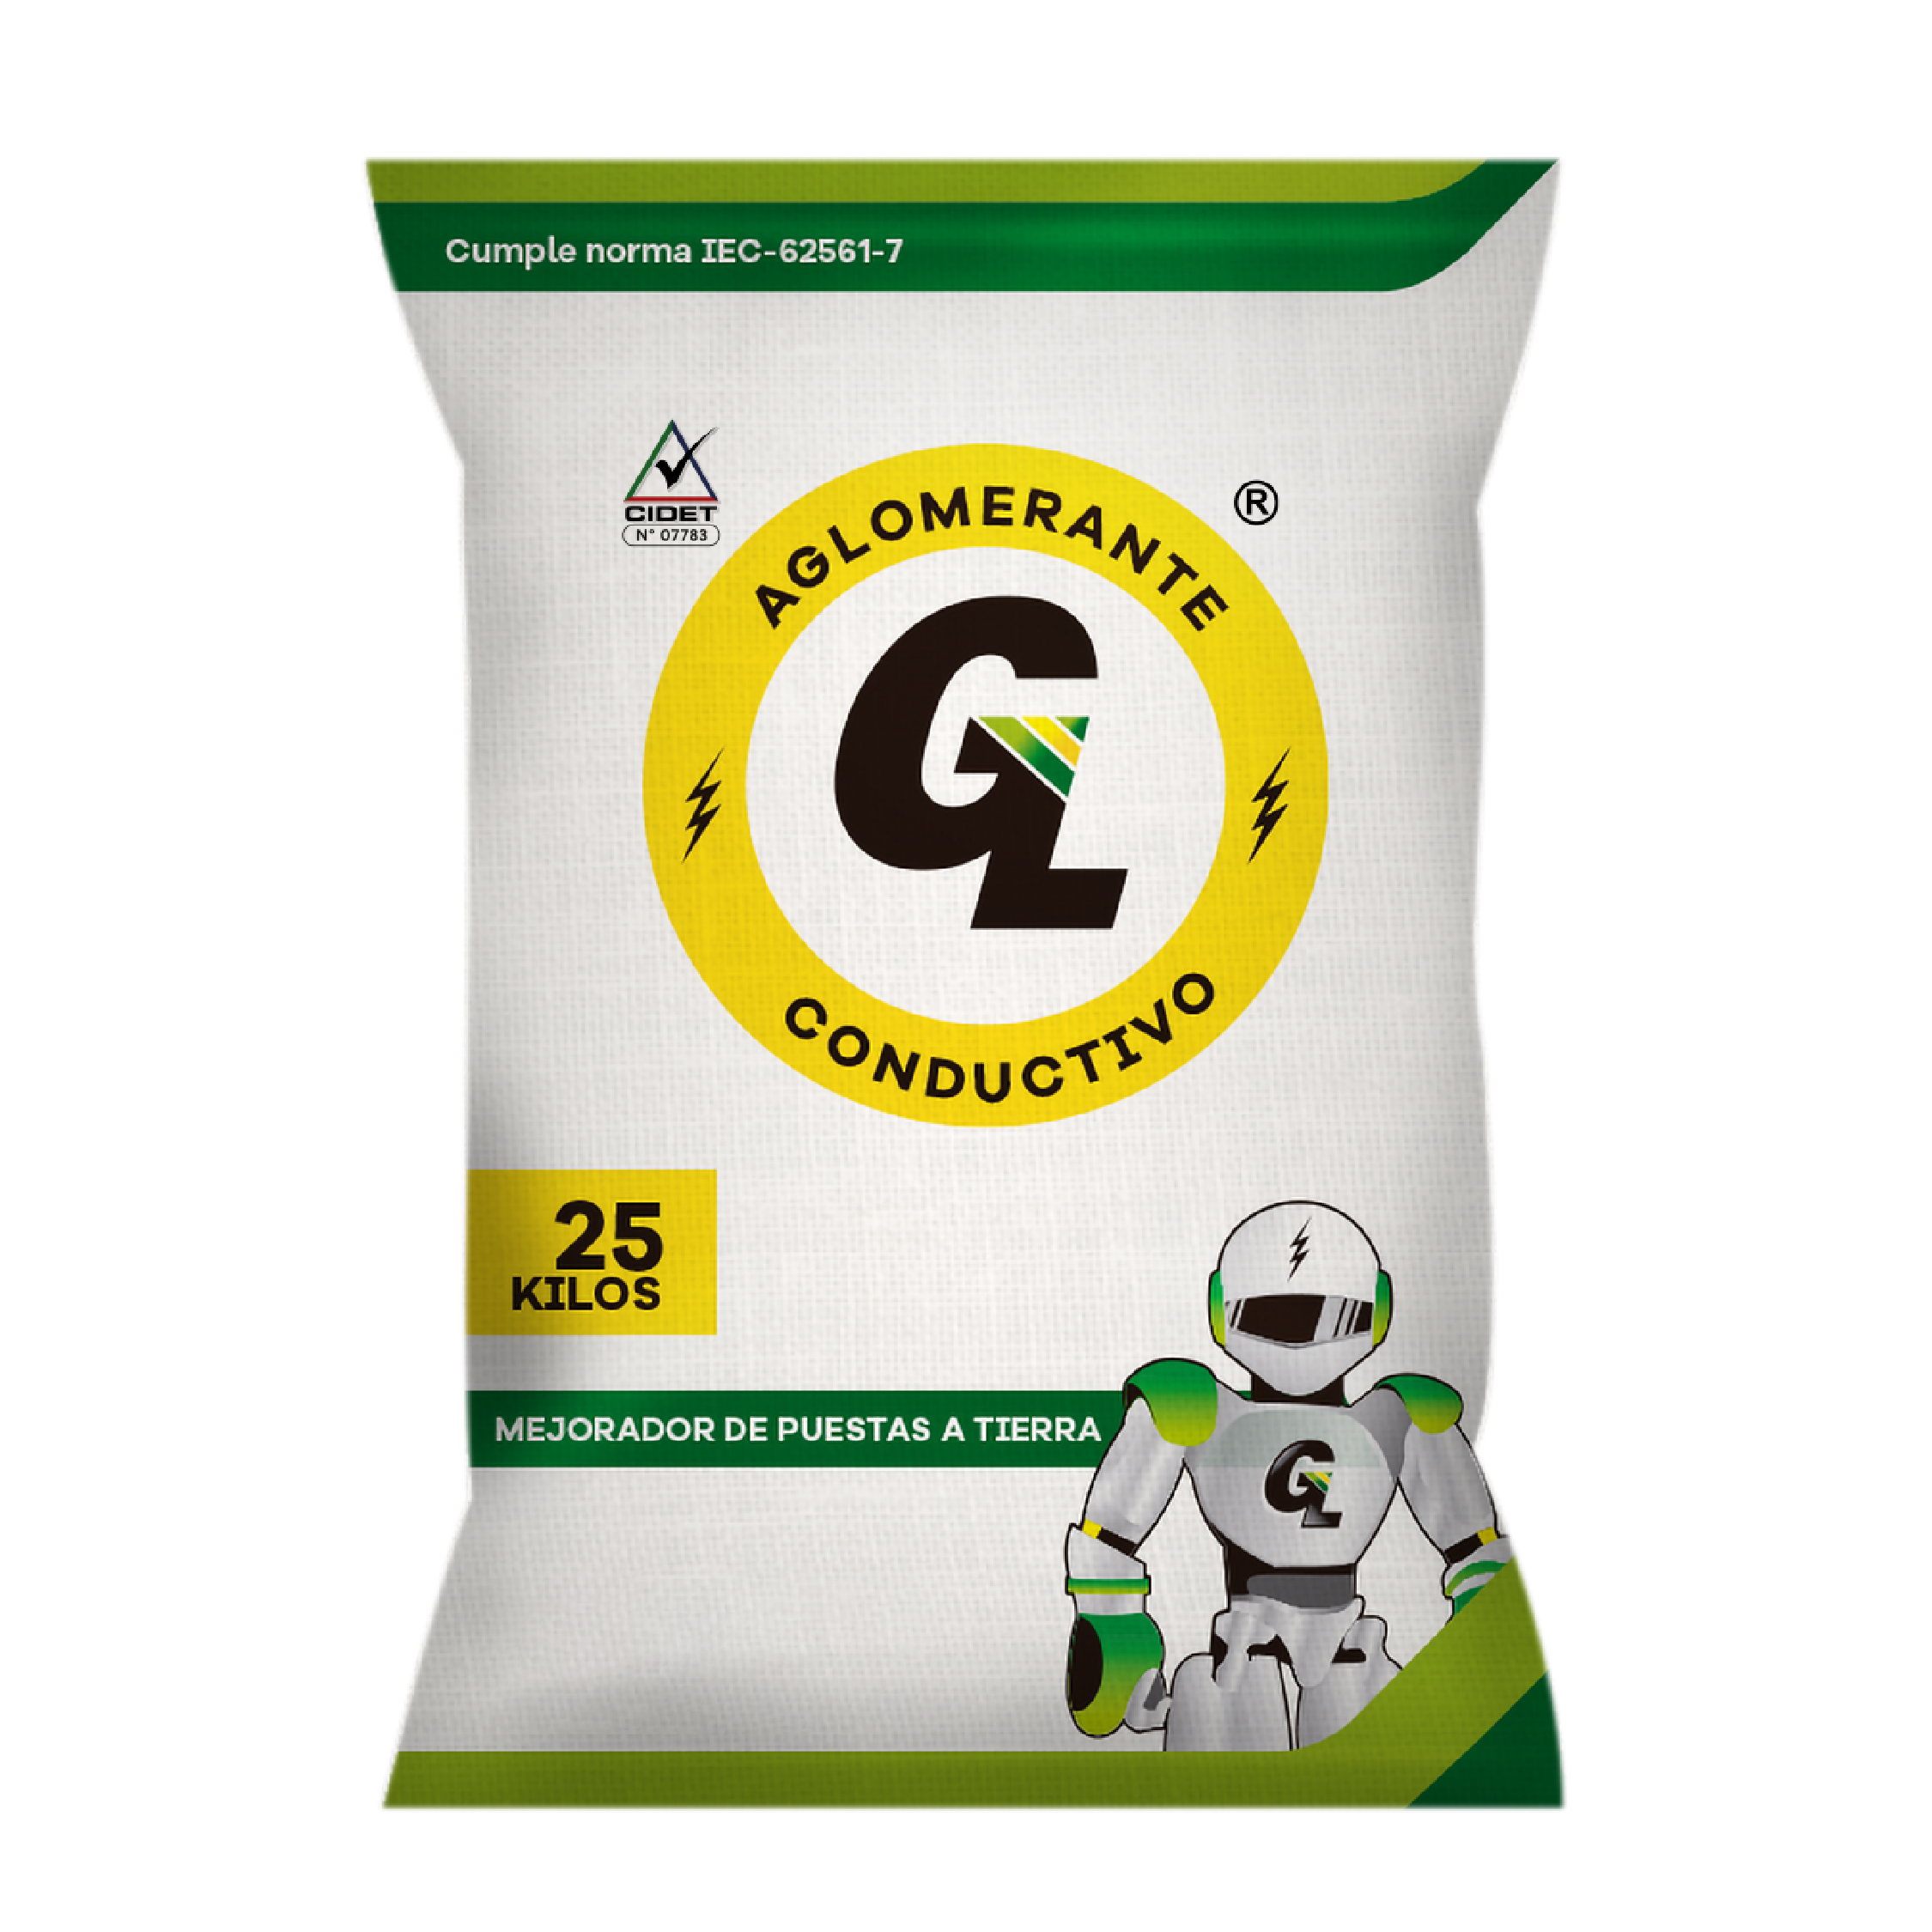 cemento conductivo GL, cuenta con certificado cidet, producto para puestas a tierra, mejorador de suelos